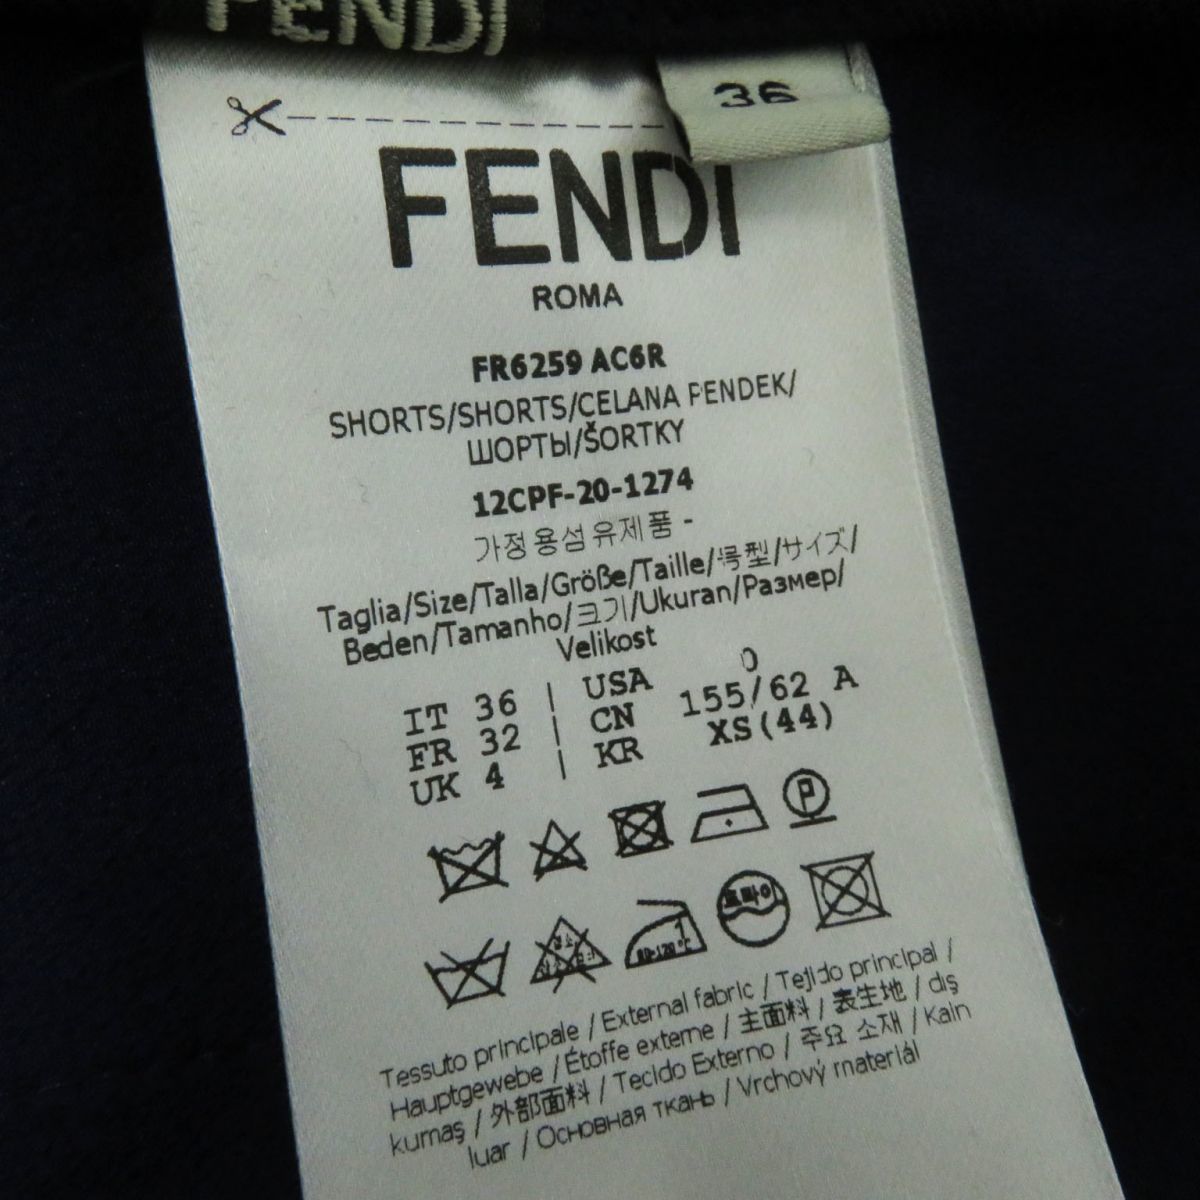  превосходный товар * стандартный товар сделано в Италии FENDI Fendi 20 год FR6259 женский велюр используя шорты бордо × темно-синий серебристый жевательная резинка в клетку 36